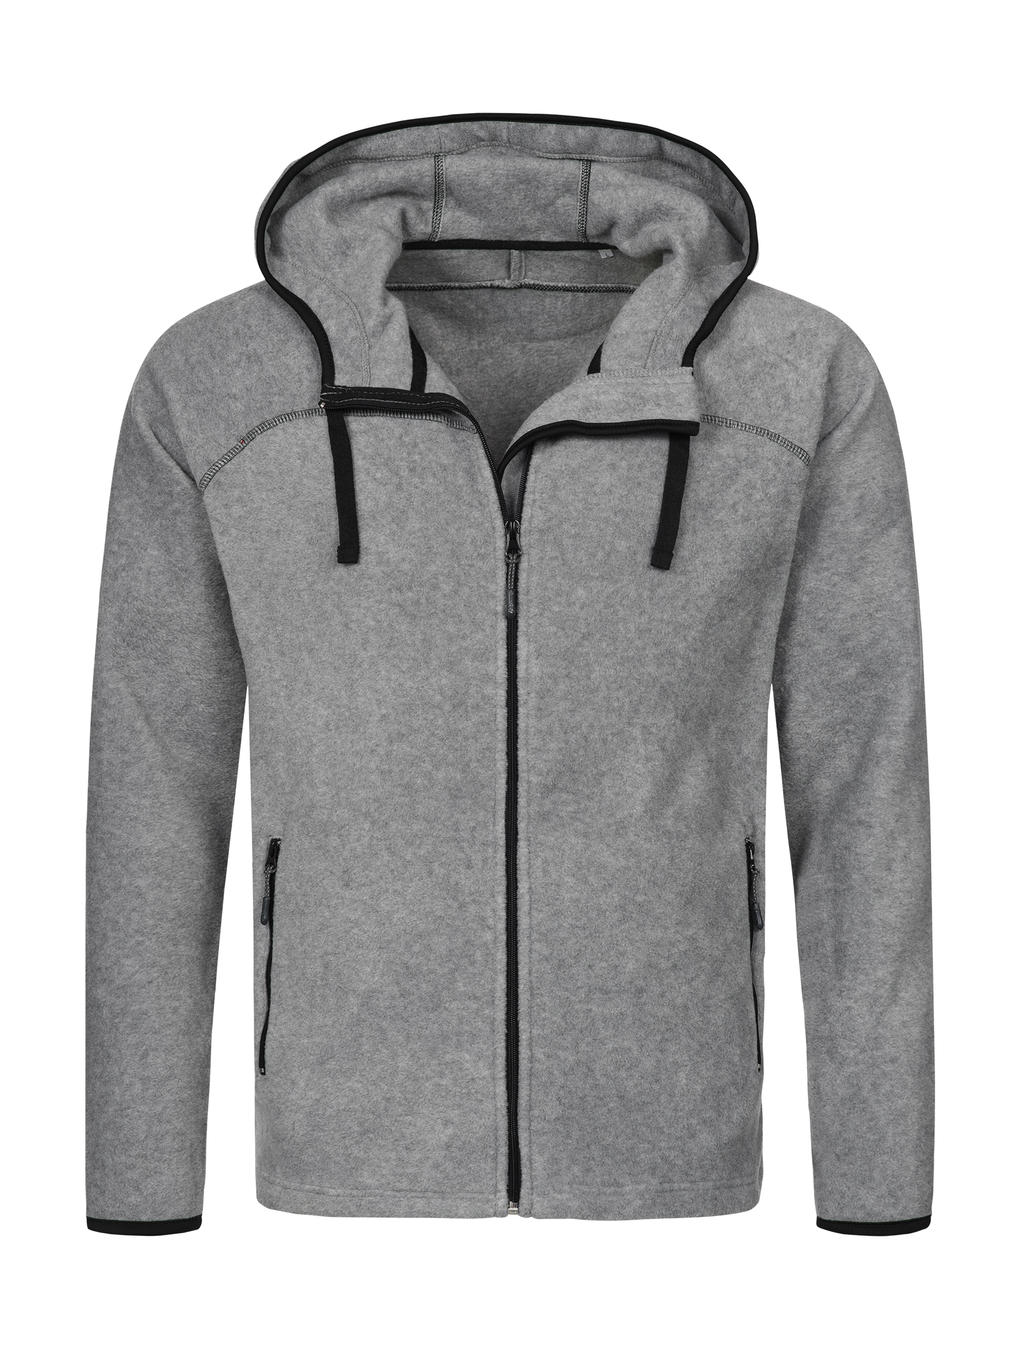  Power Fleece Jacket in Farbe Grey Heather